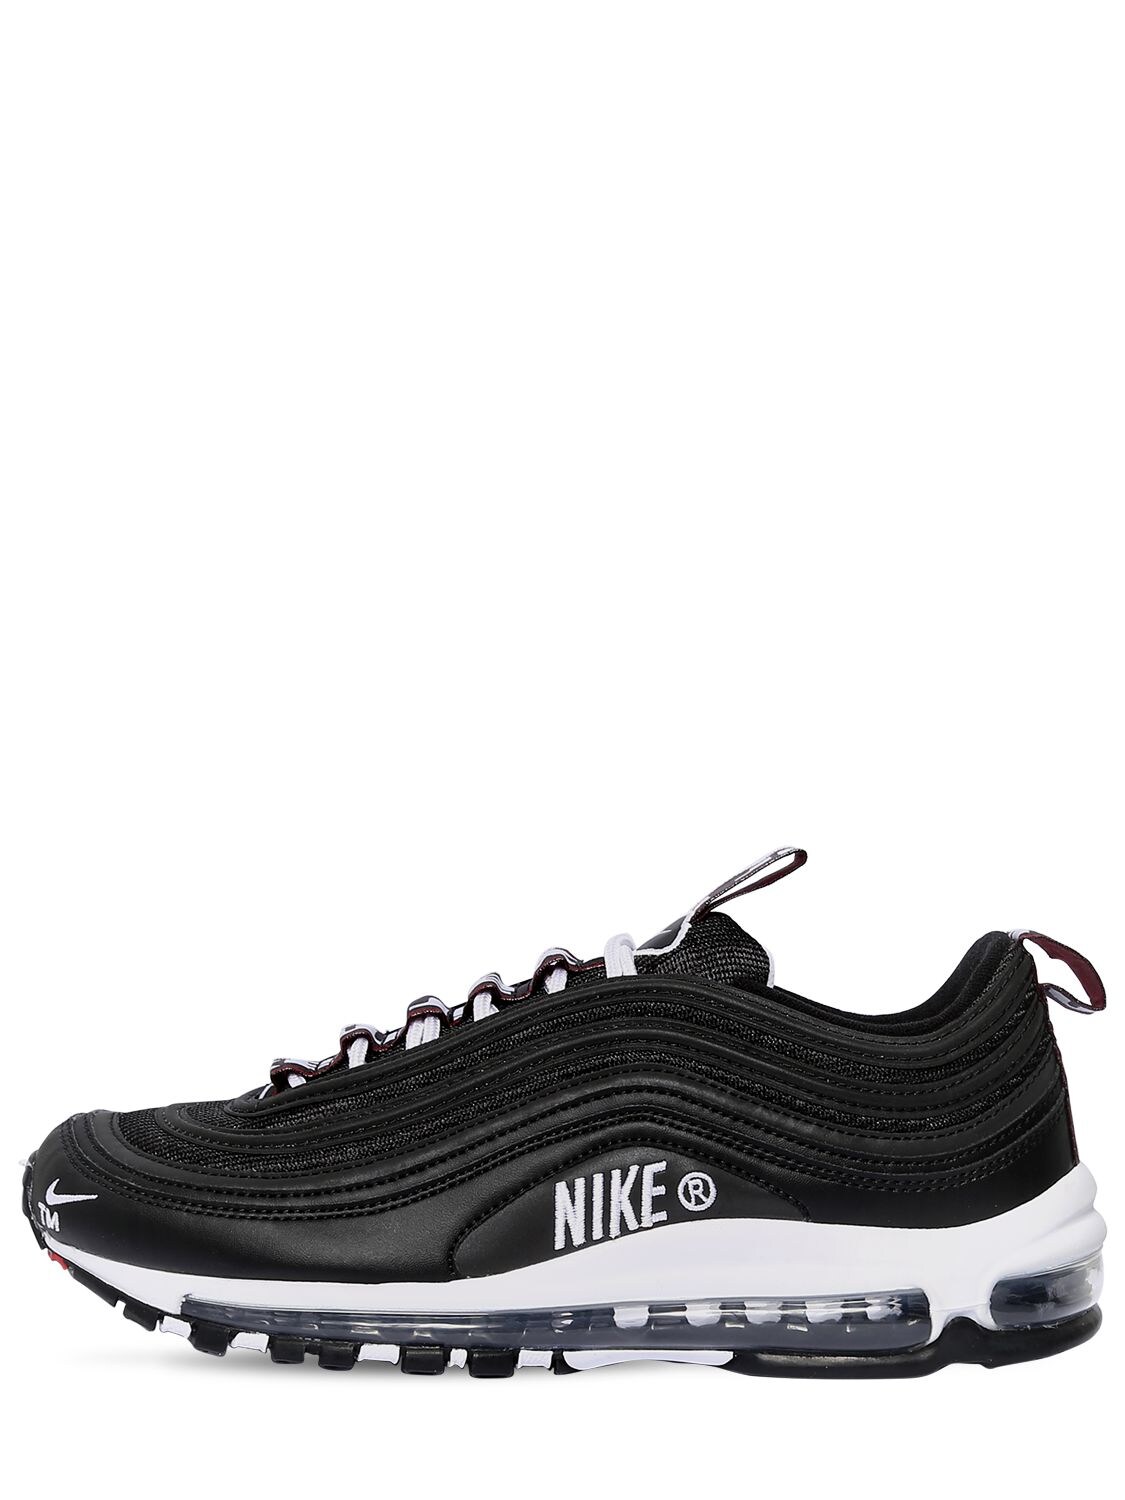 Nike Air Max 97 Premium Sneakers In Black